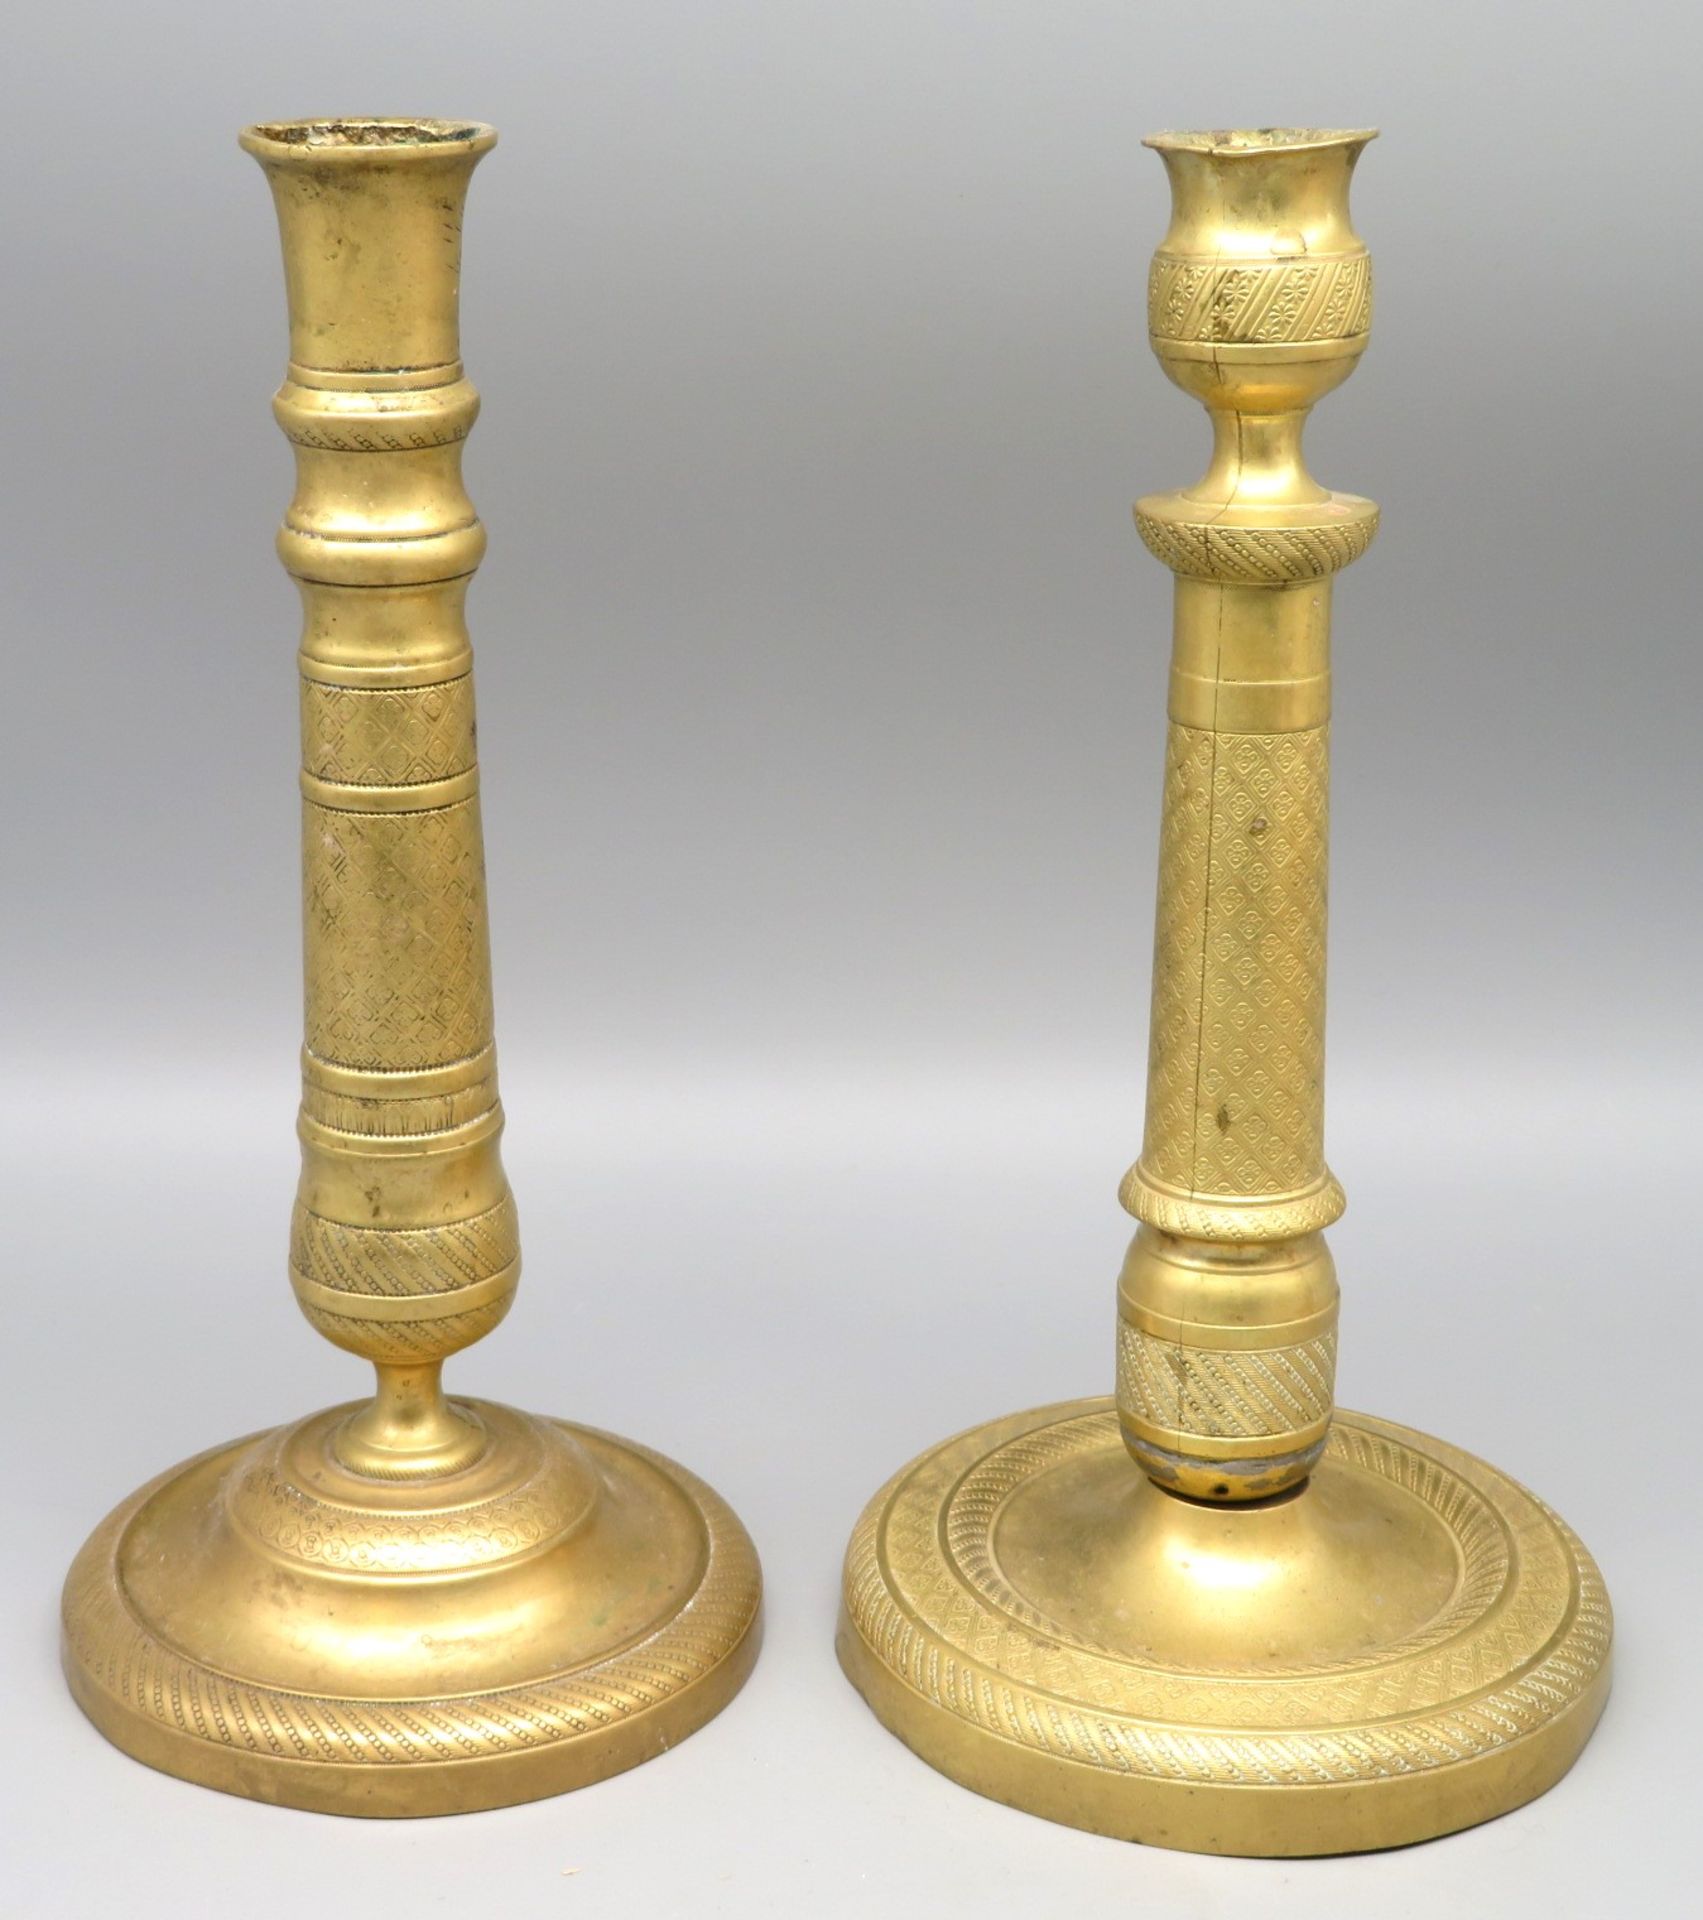 2 diverse Kerzenleuchter, Frankreich, um 1800, Messing mit Reliefdekor, h 25/25,5 cm.